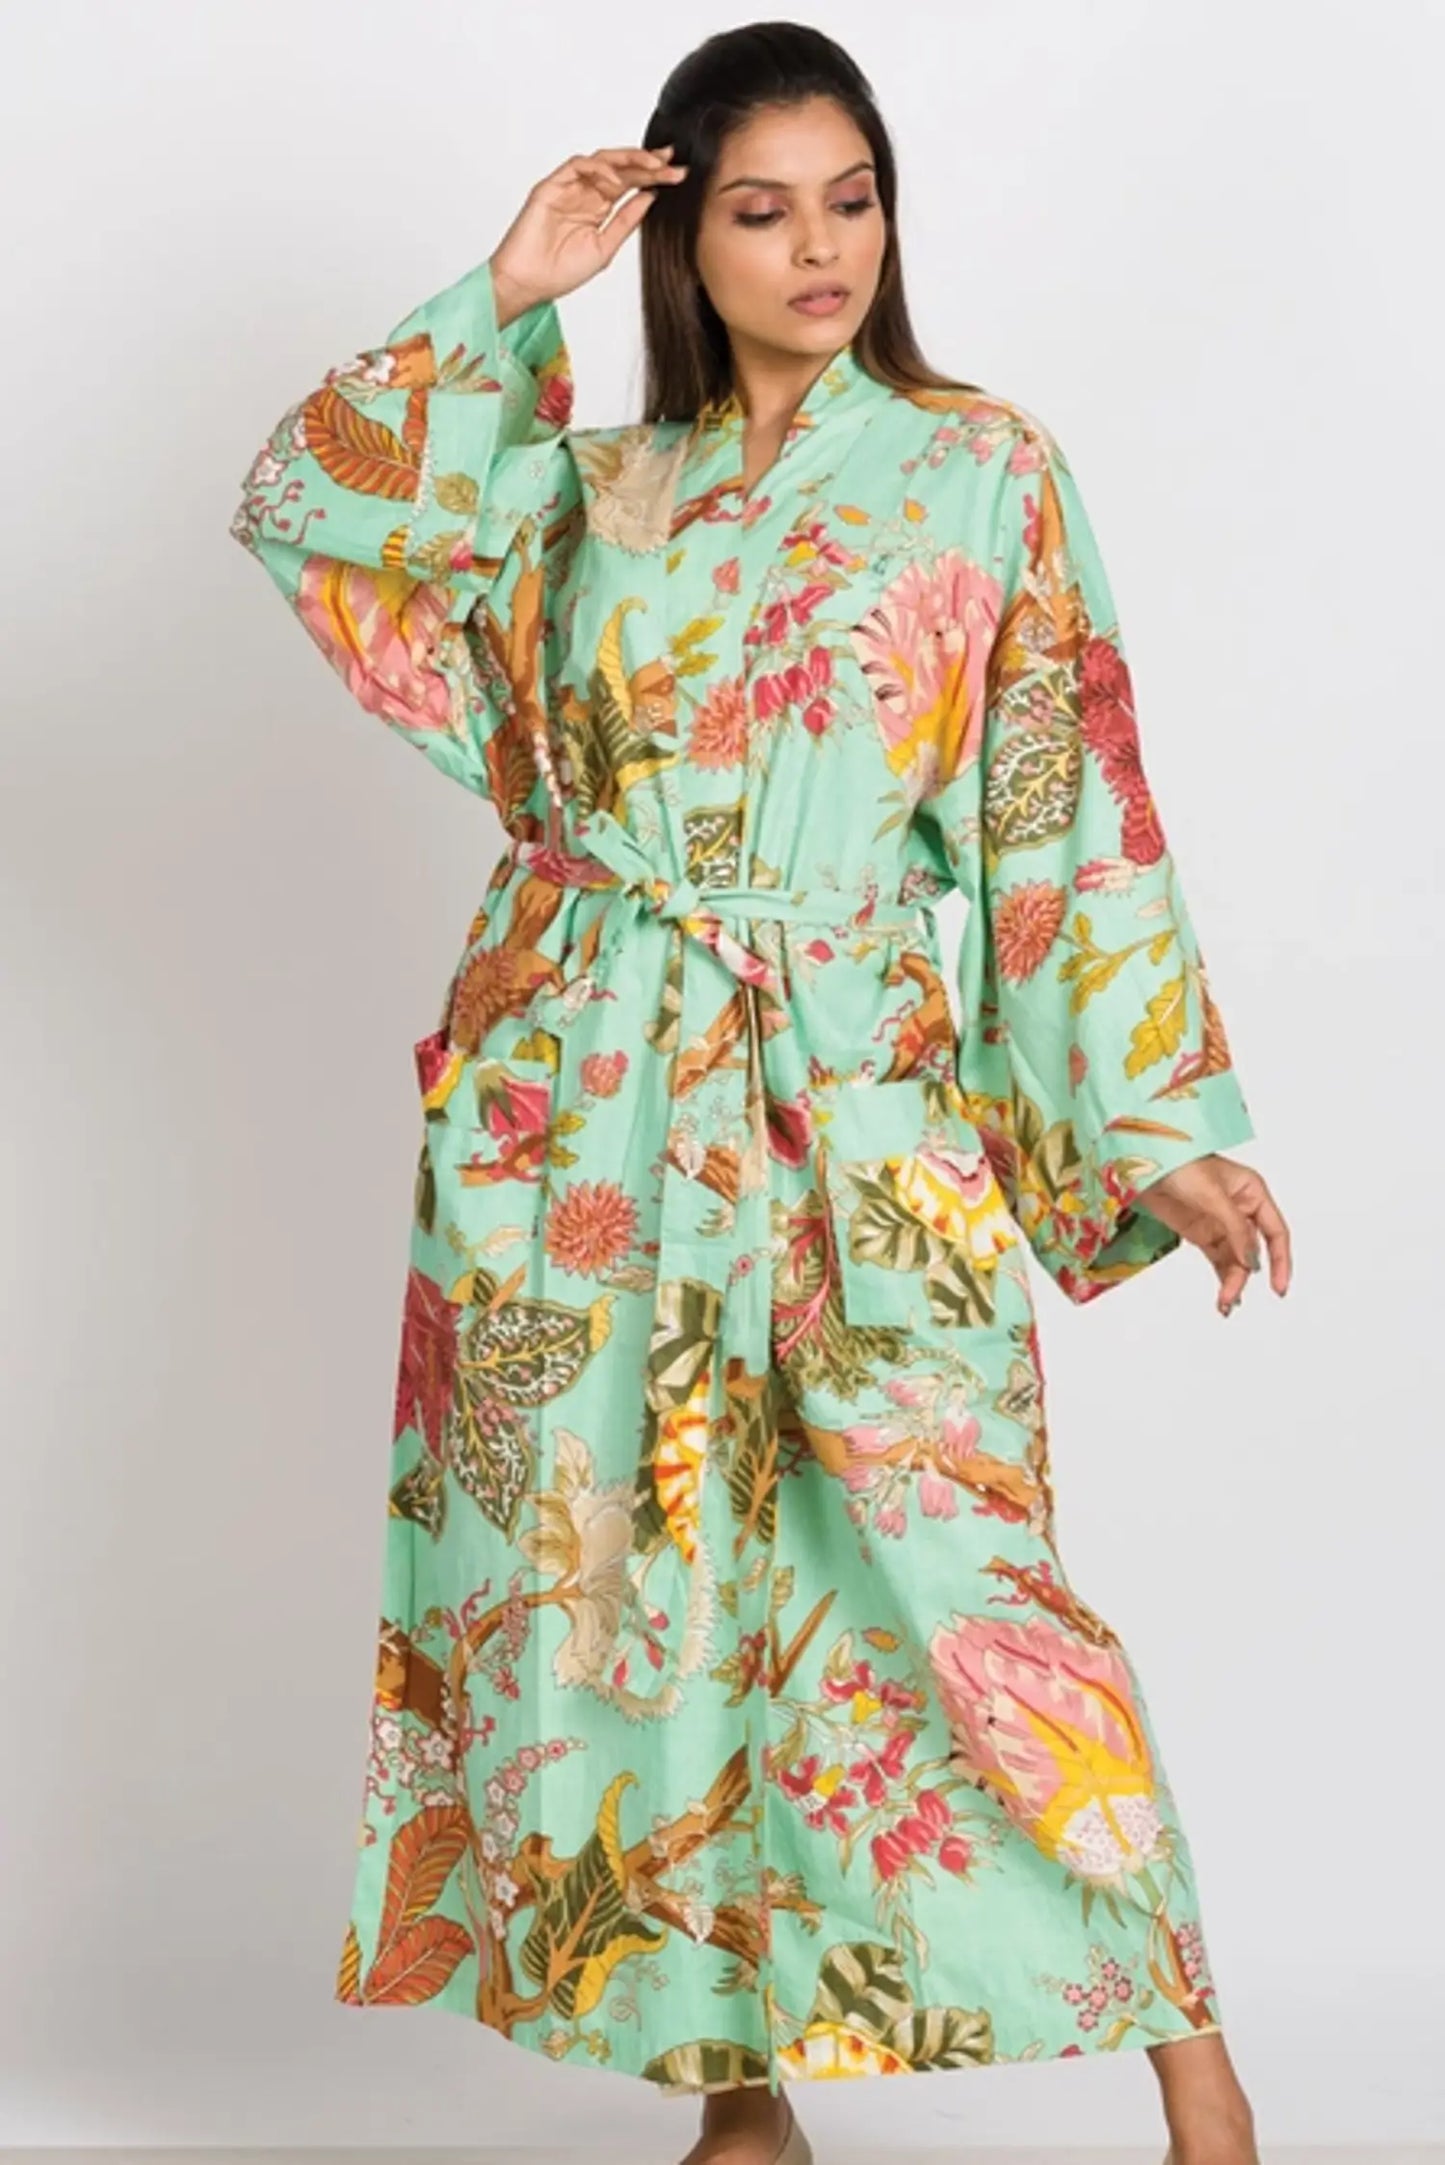 woman wearing a long floral kimono robe